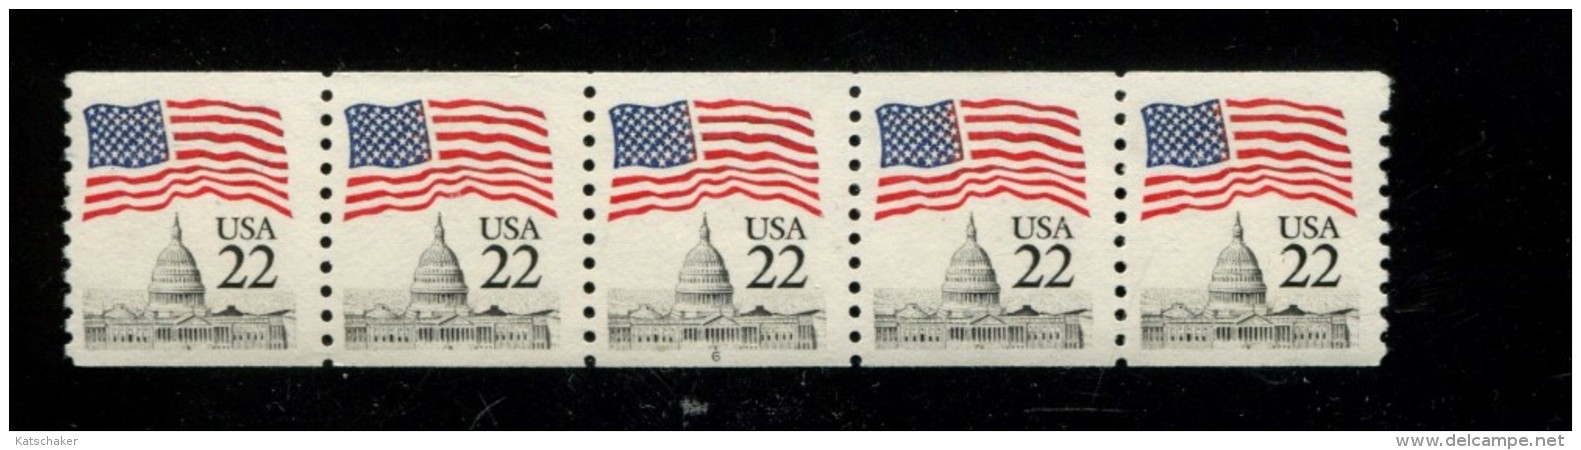 USA POSTFRIS MINT NEVER HINGED POSTFRISCH EINWANDFREI SCOTT 2115 Plate 6 - Ruedecillas (Números De Placas)